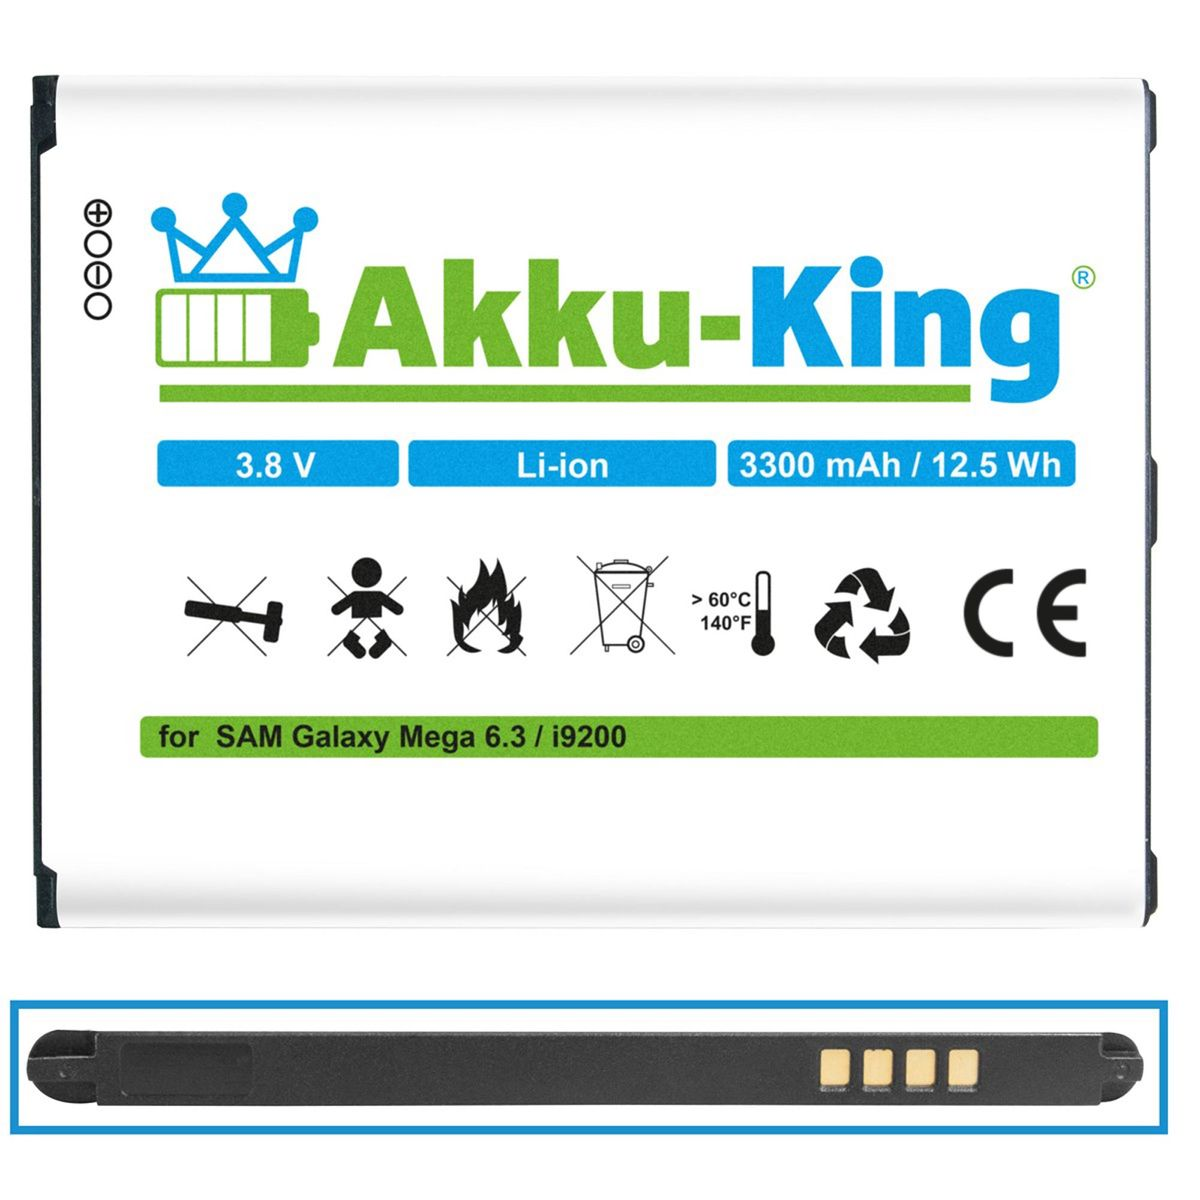 3300mAh Volt, mit Akku kompatibel Samsung Li-Ion 3.8 EB-B700BE Handy-Akku, AKKU-KING